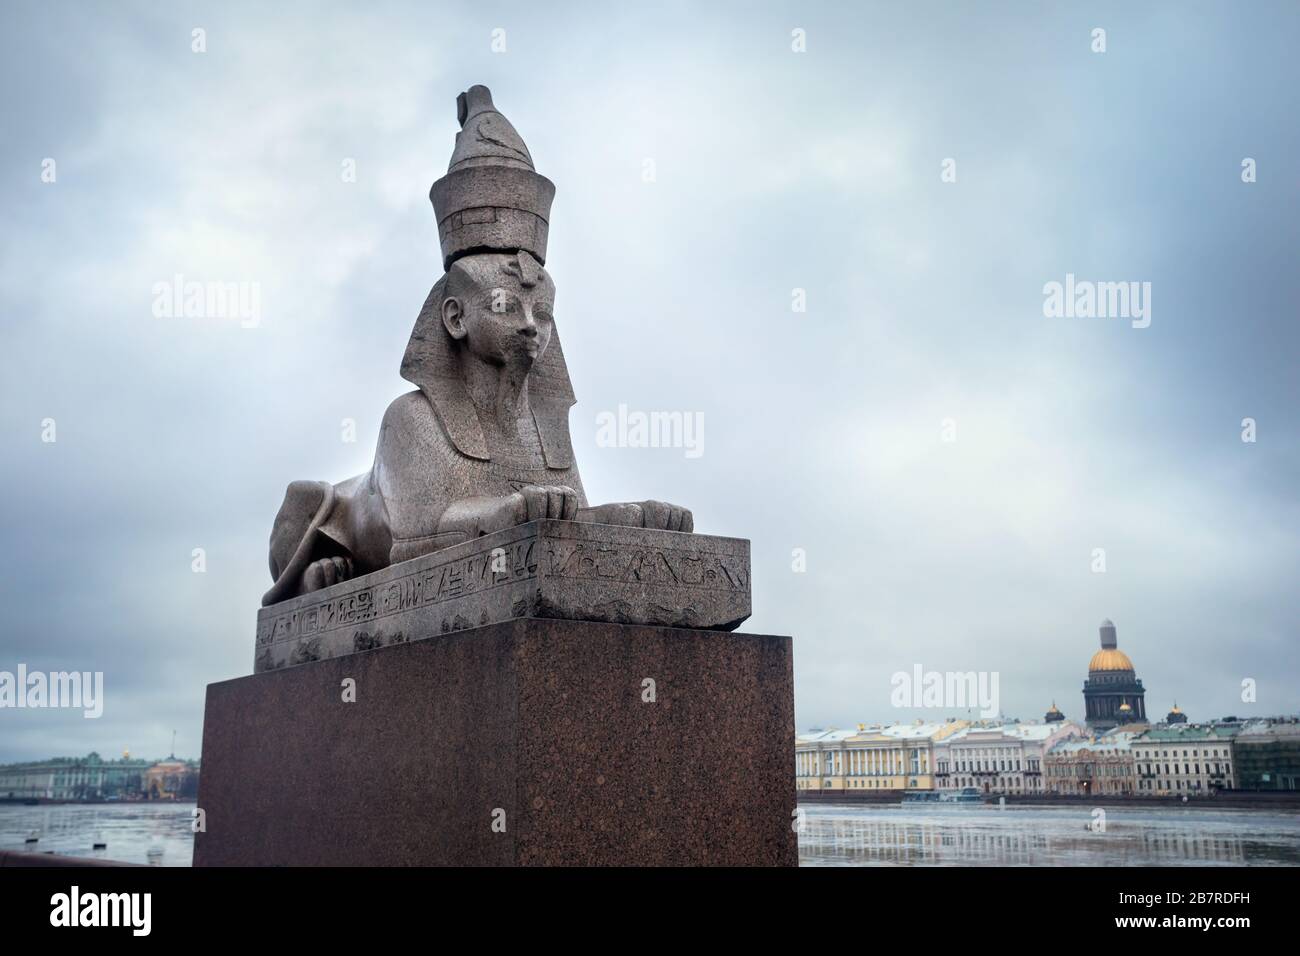 Vecchio sistema egiziano sphynx sulle banchine del fiume Neva al cielo molto nuvoloso in inverno a San Pietroburgo, Russia Foto Stock